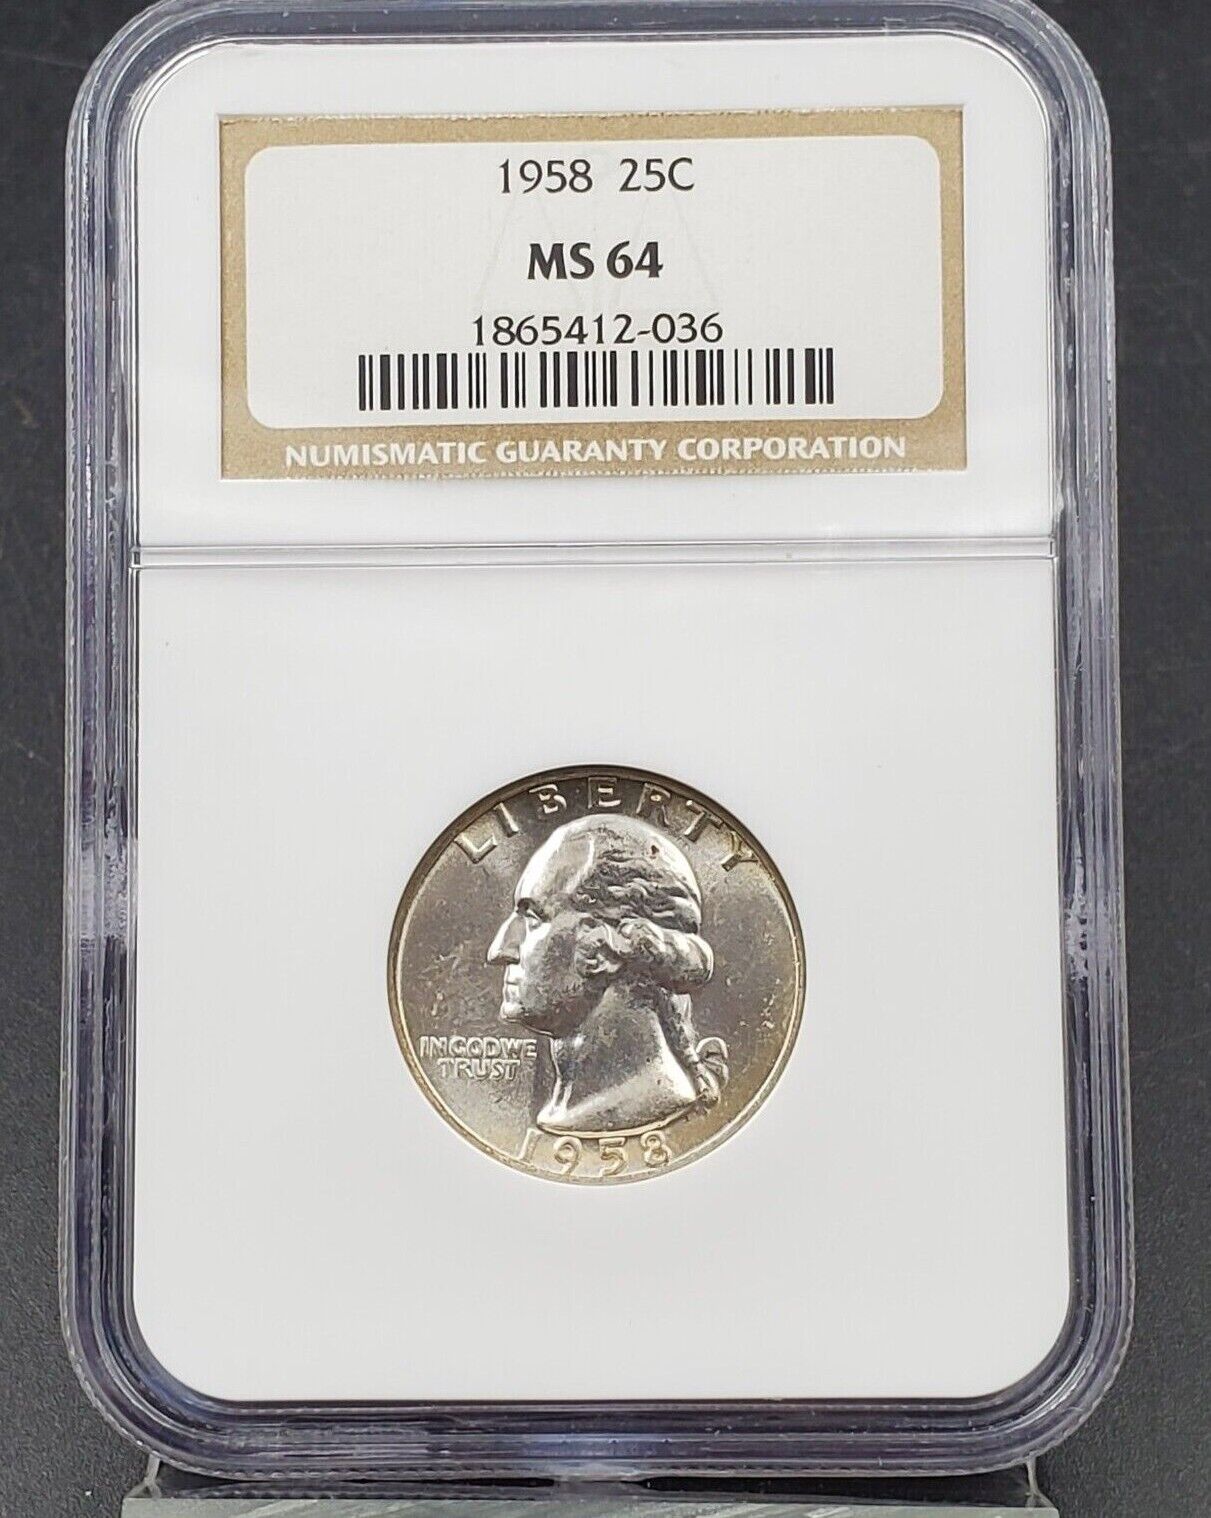 1958 P Washington Silver Quarter Coin NGC MS64 Choice BU UNC Certified